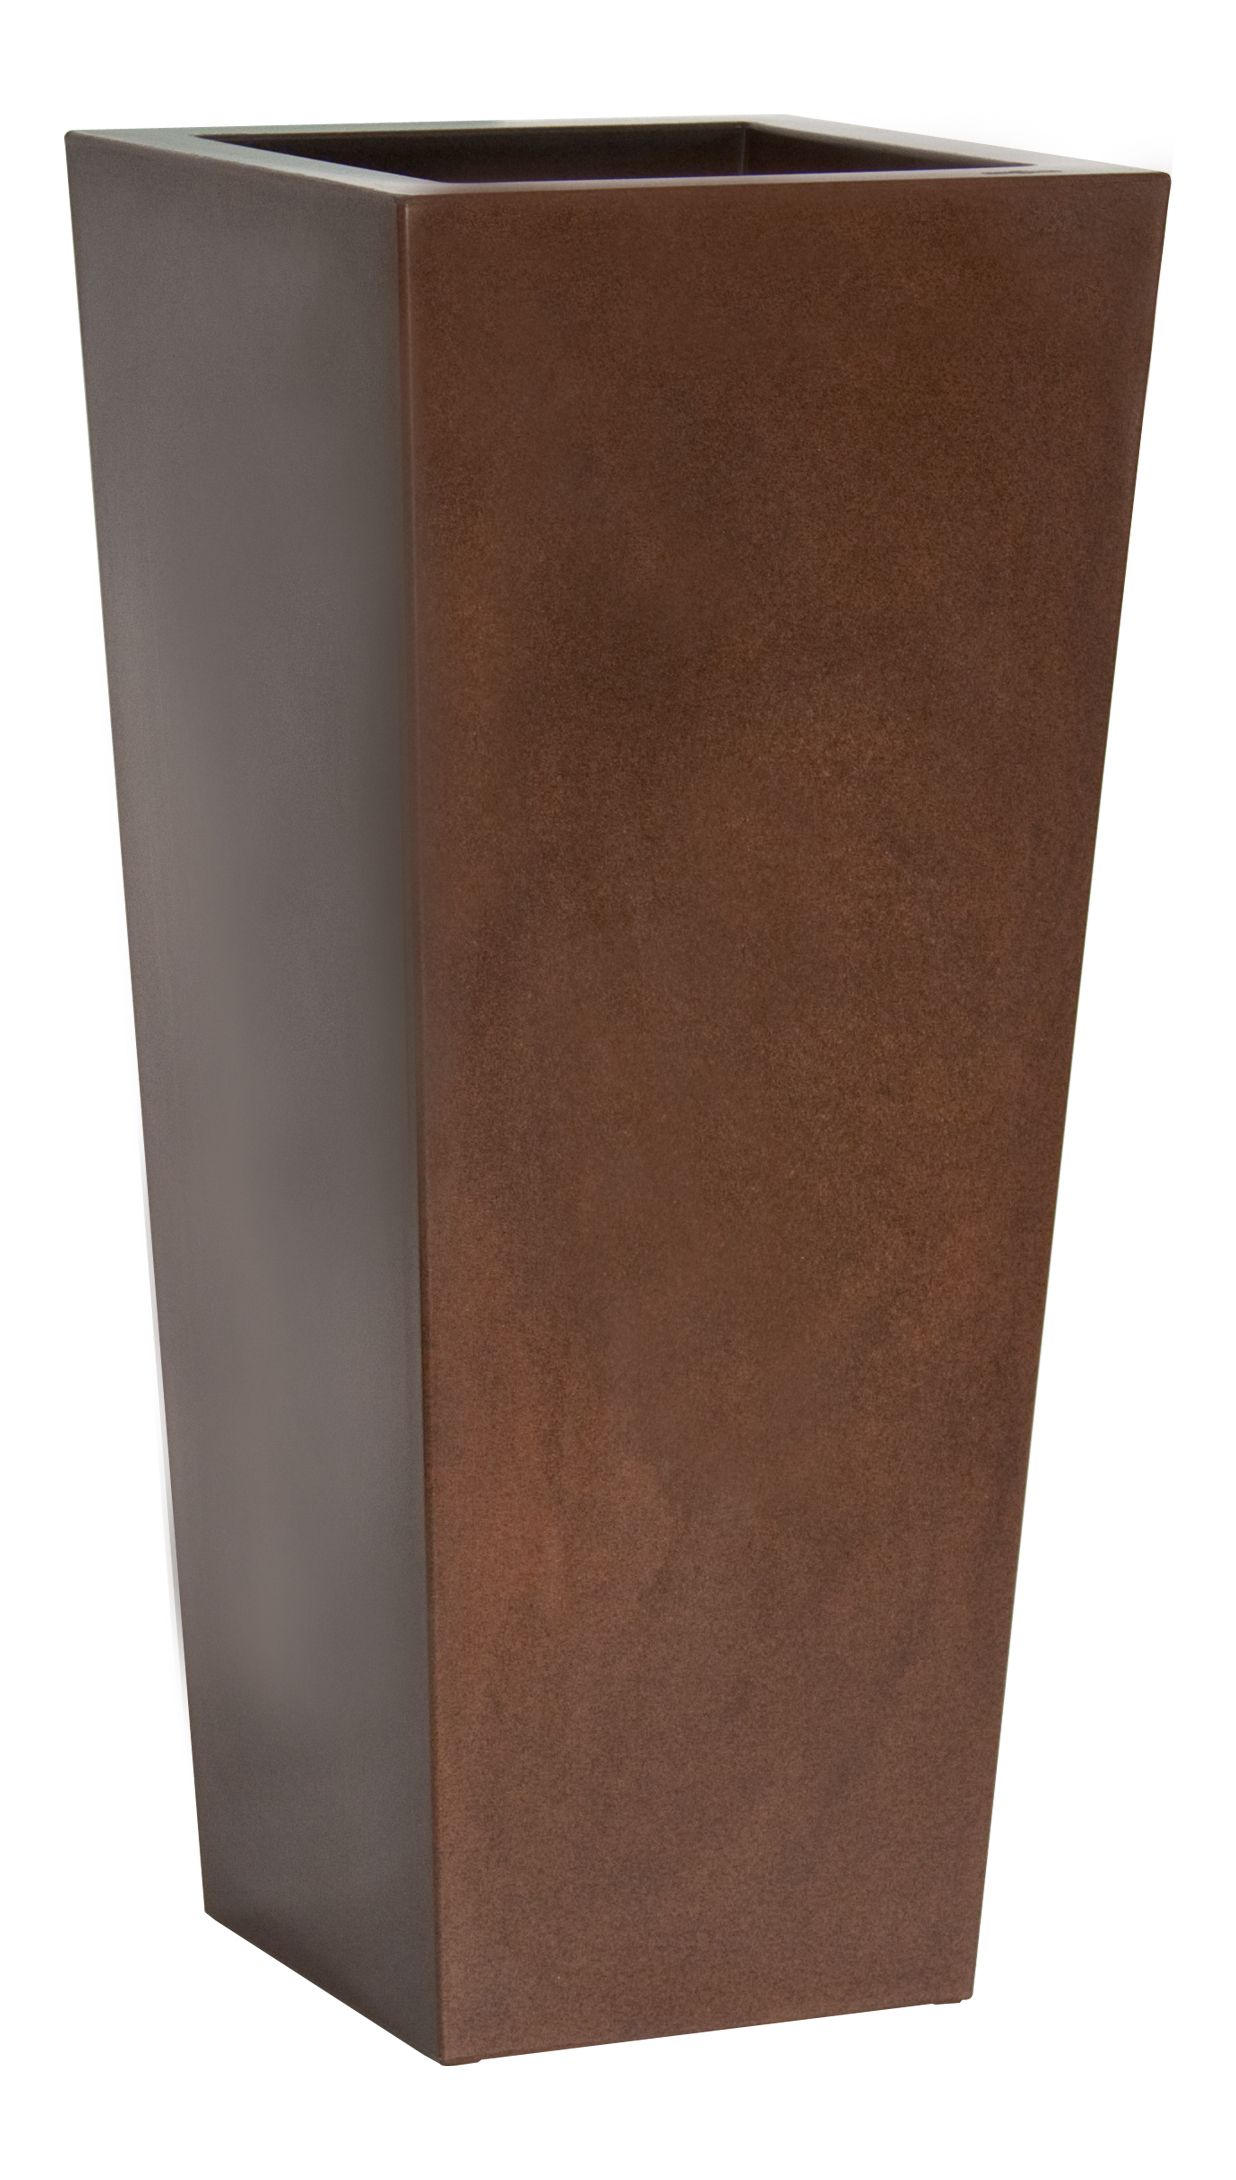 Plust - Dizajnový kvetináč KIAM lesklý, 35 x 35 cm - hnedý